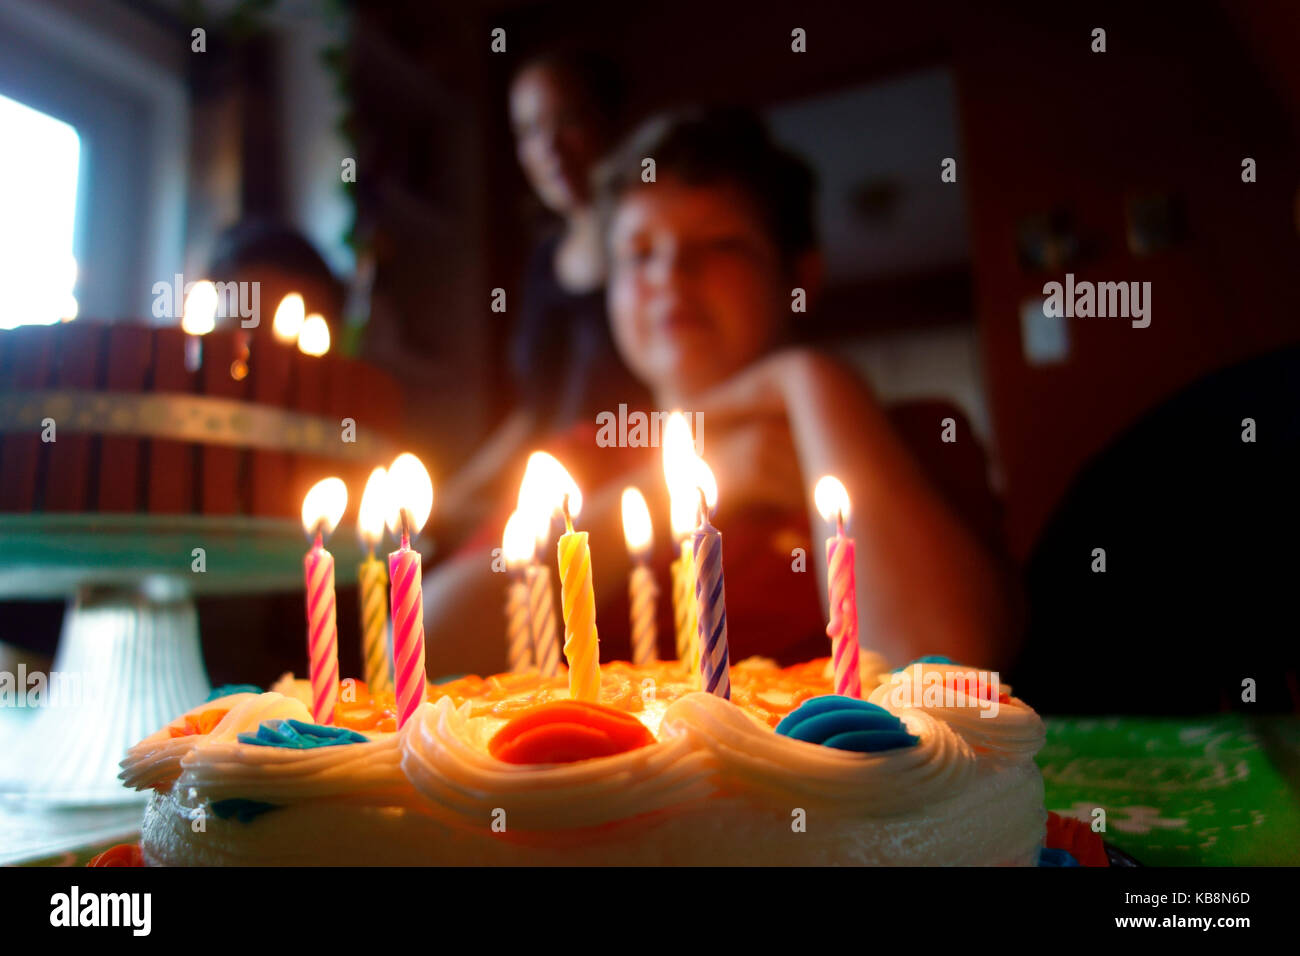 Un gâteau d'anniversaire avec bougies allumées en face d'un garçon de 11 ans Banque D'Images